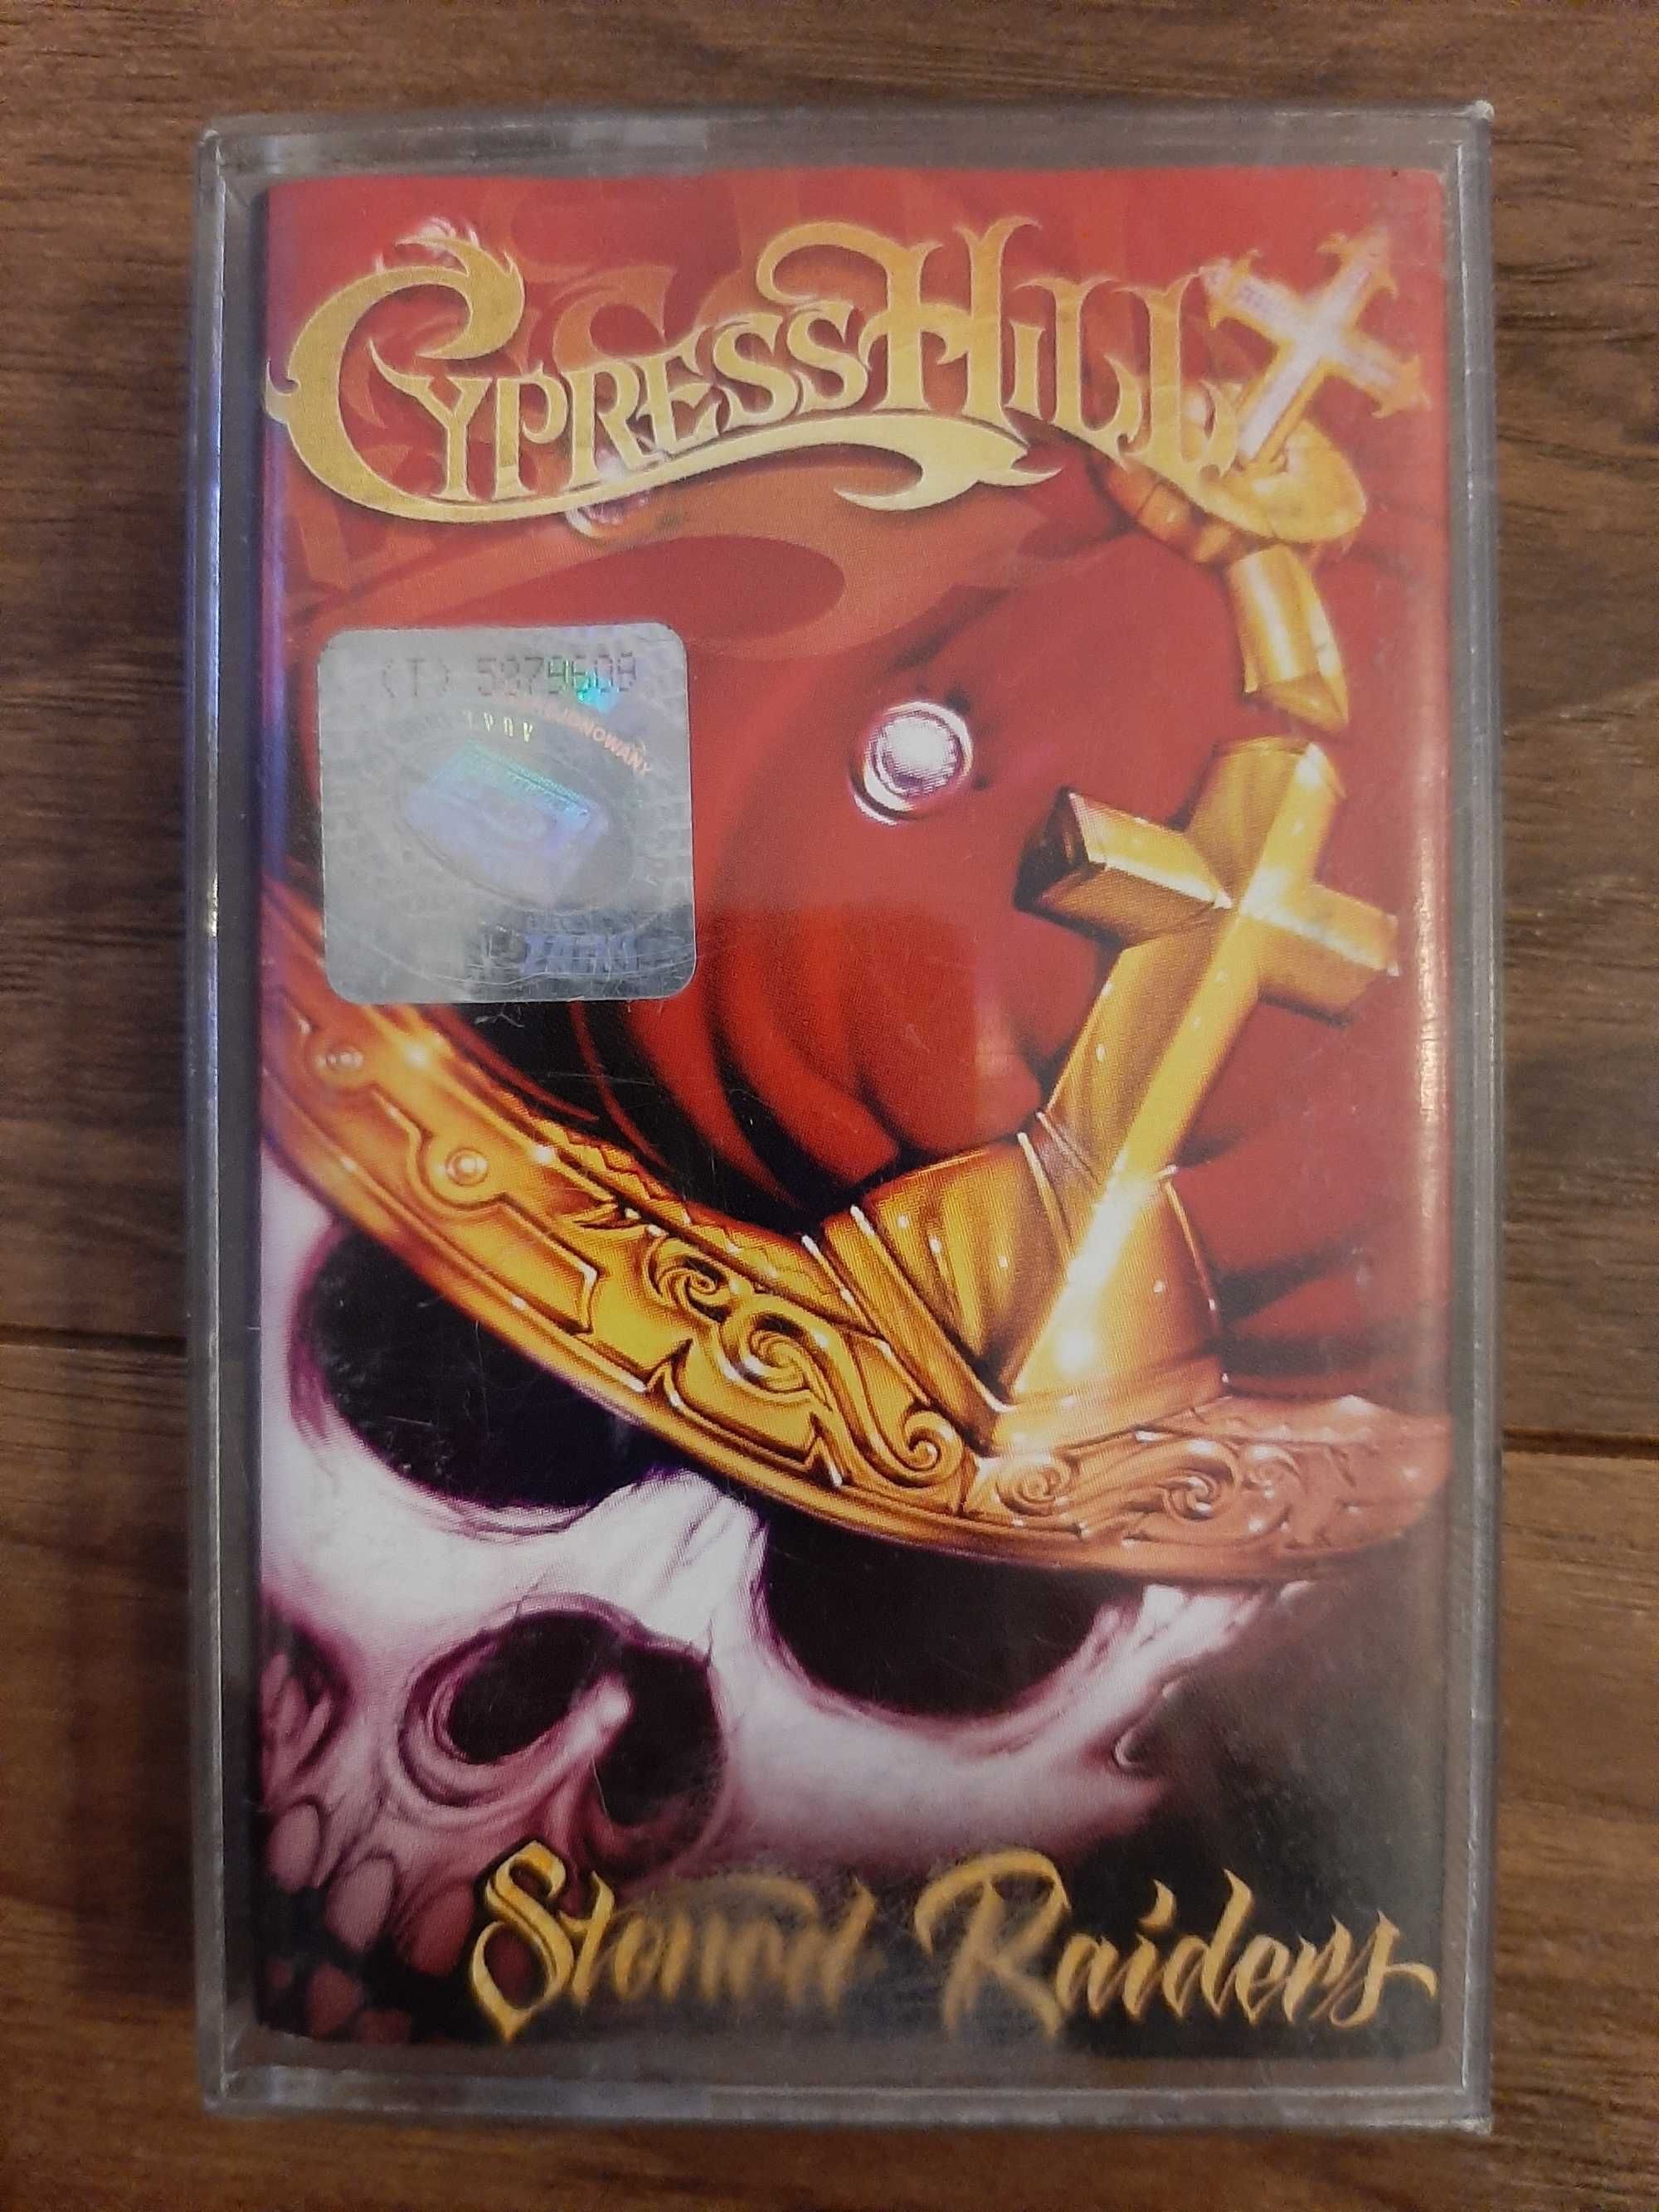 Cypress Hill - Stoned Raiders kaseta magnetofonowa